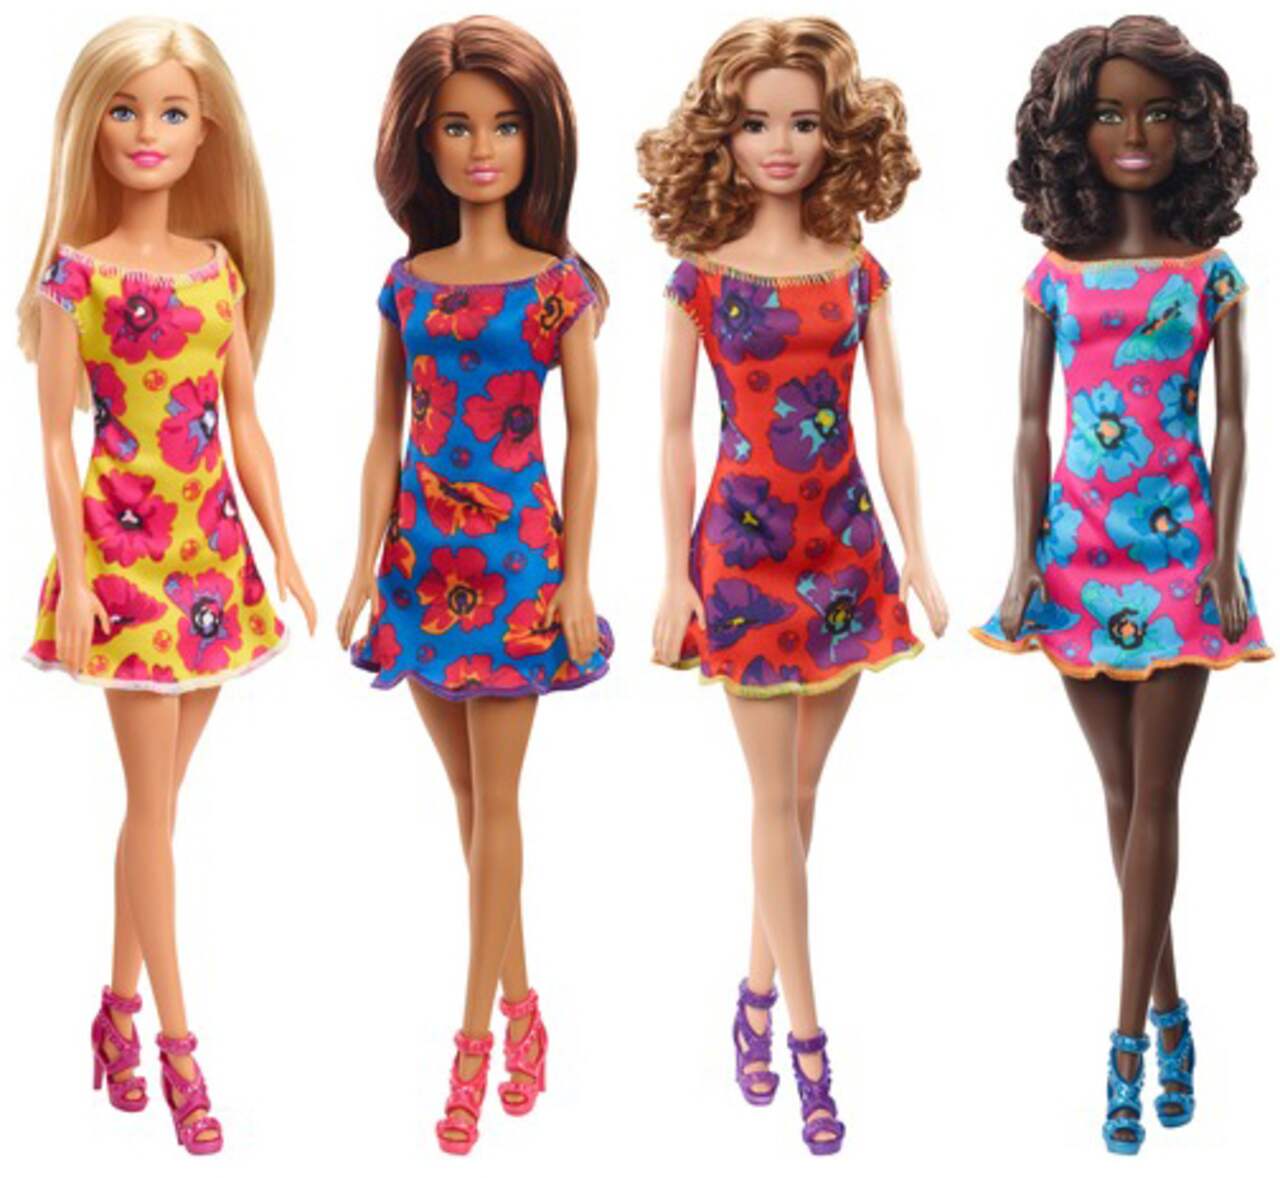 Poupée Mattel Barbie - Mobilier Lave Vaisselle à prix bas